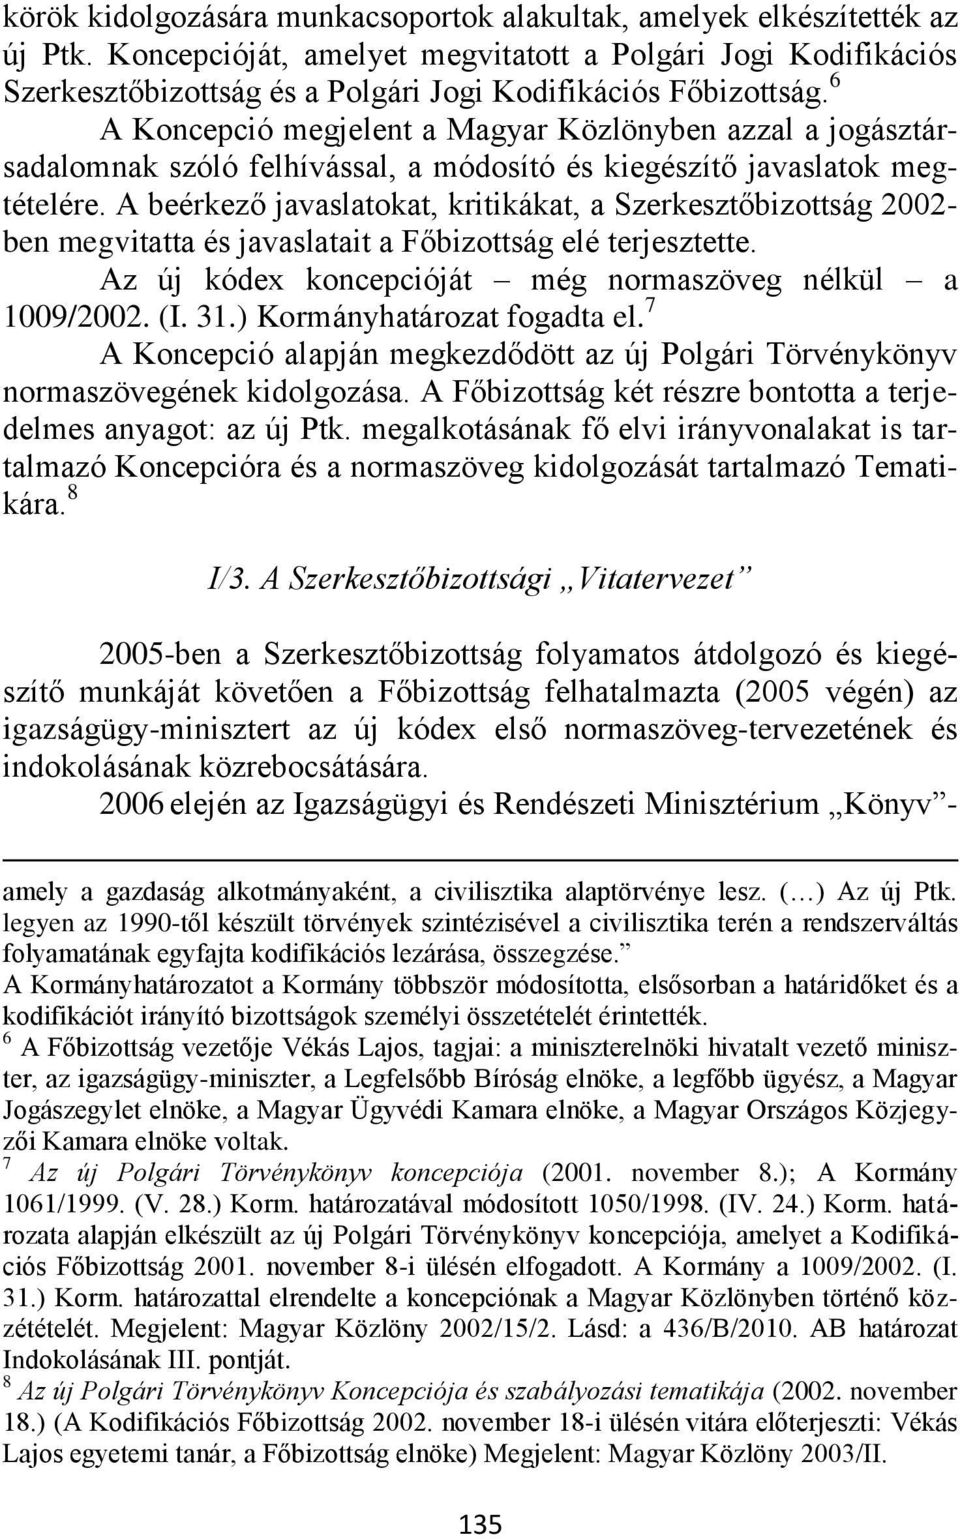 6 A Koncepció megjelent a Magyar Közlönyben azzal a jogásztársadalomnak szóló felhívással, a módosító és kiegészítő javaslatok megtételére.